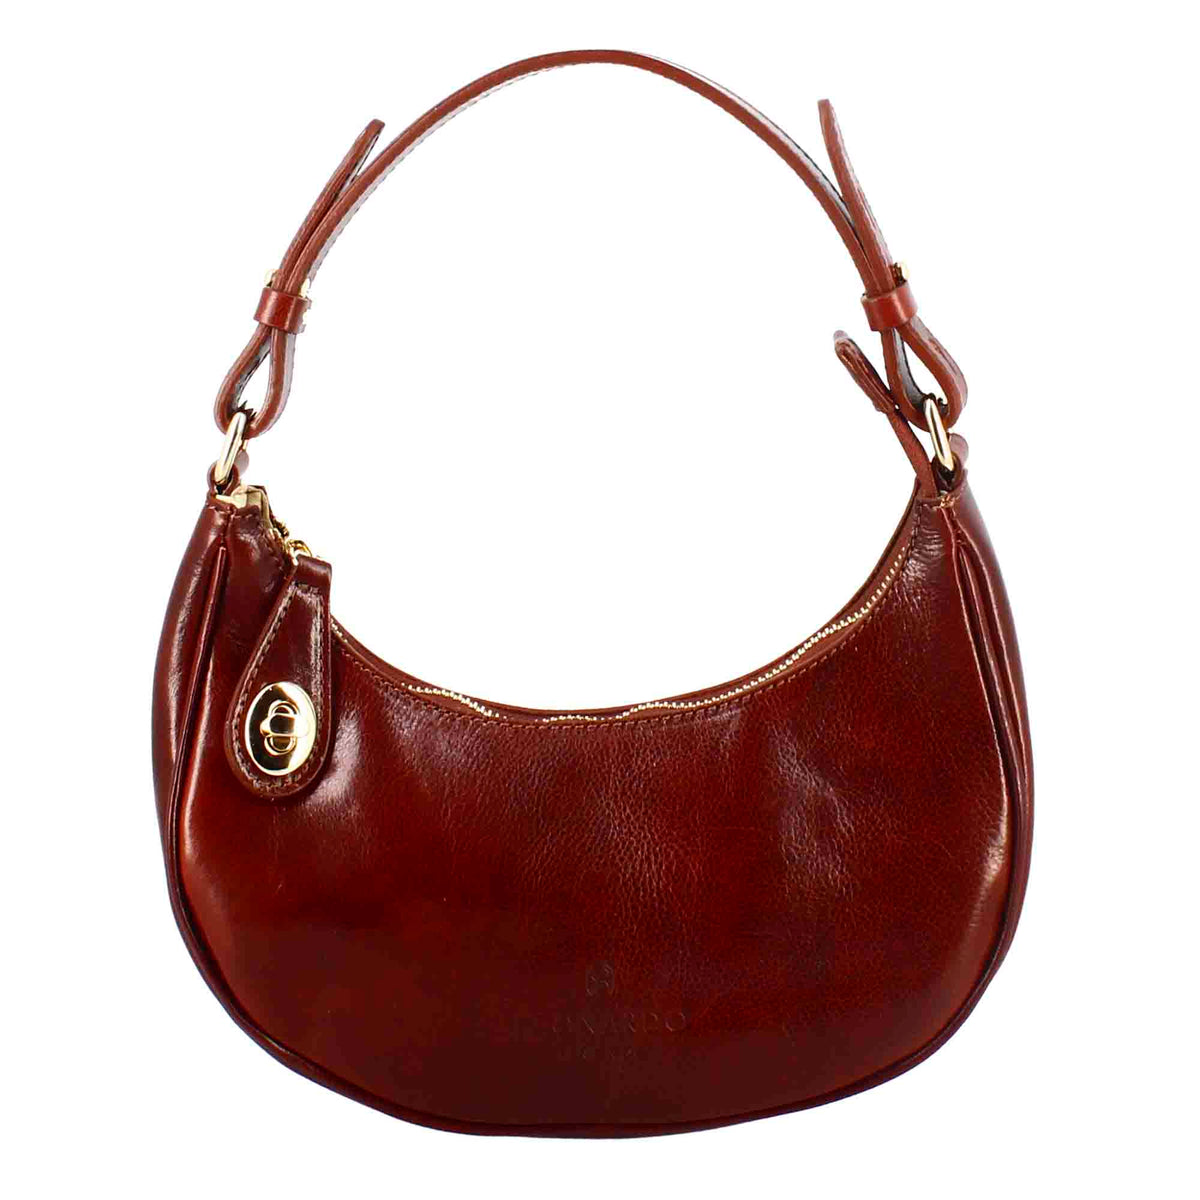 Jane shoulder bag in brown leather with removable shoulder strap